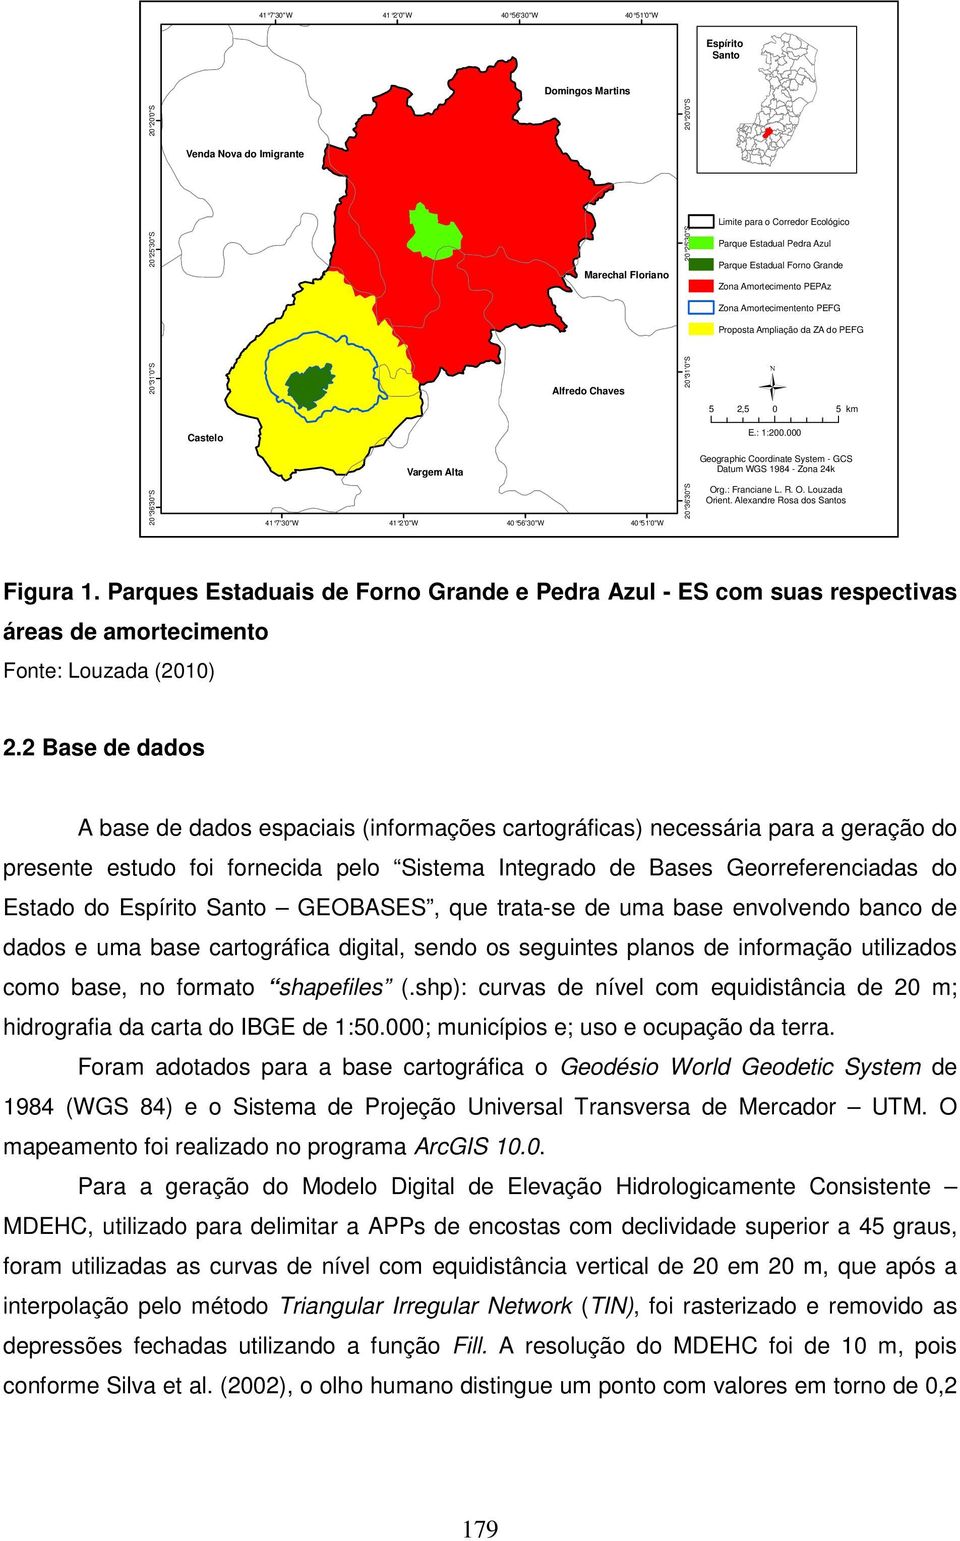 000 Vargem Alta Geographic Coordinate System - GCS Datum WGS 1984 - Zona 24k 20 36'30"S 41 7'30"W 41 2'0"W 40 56'30"W 40 51'0"W 20 36'30"S Org.: Franciane L. R. O. Louzada Orient.